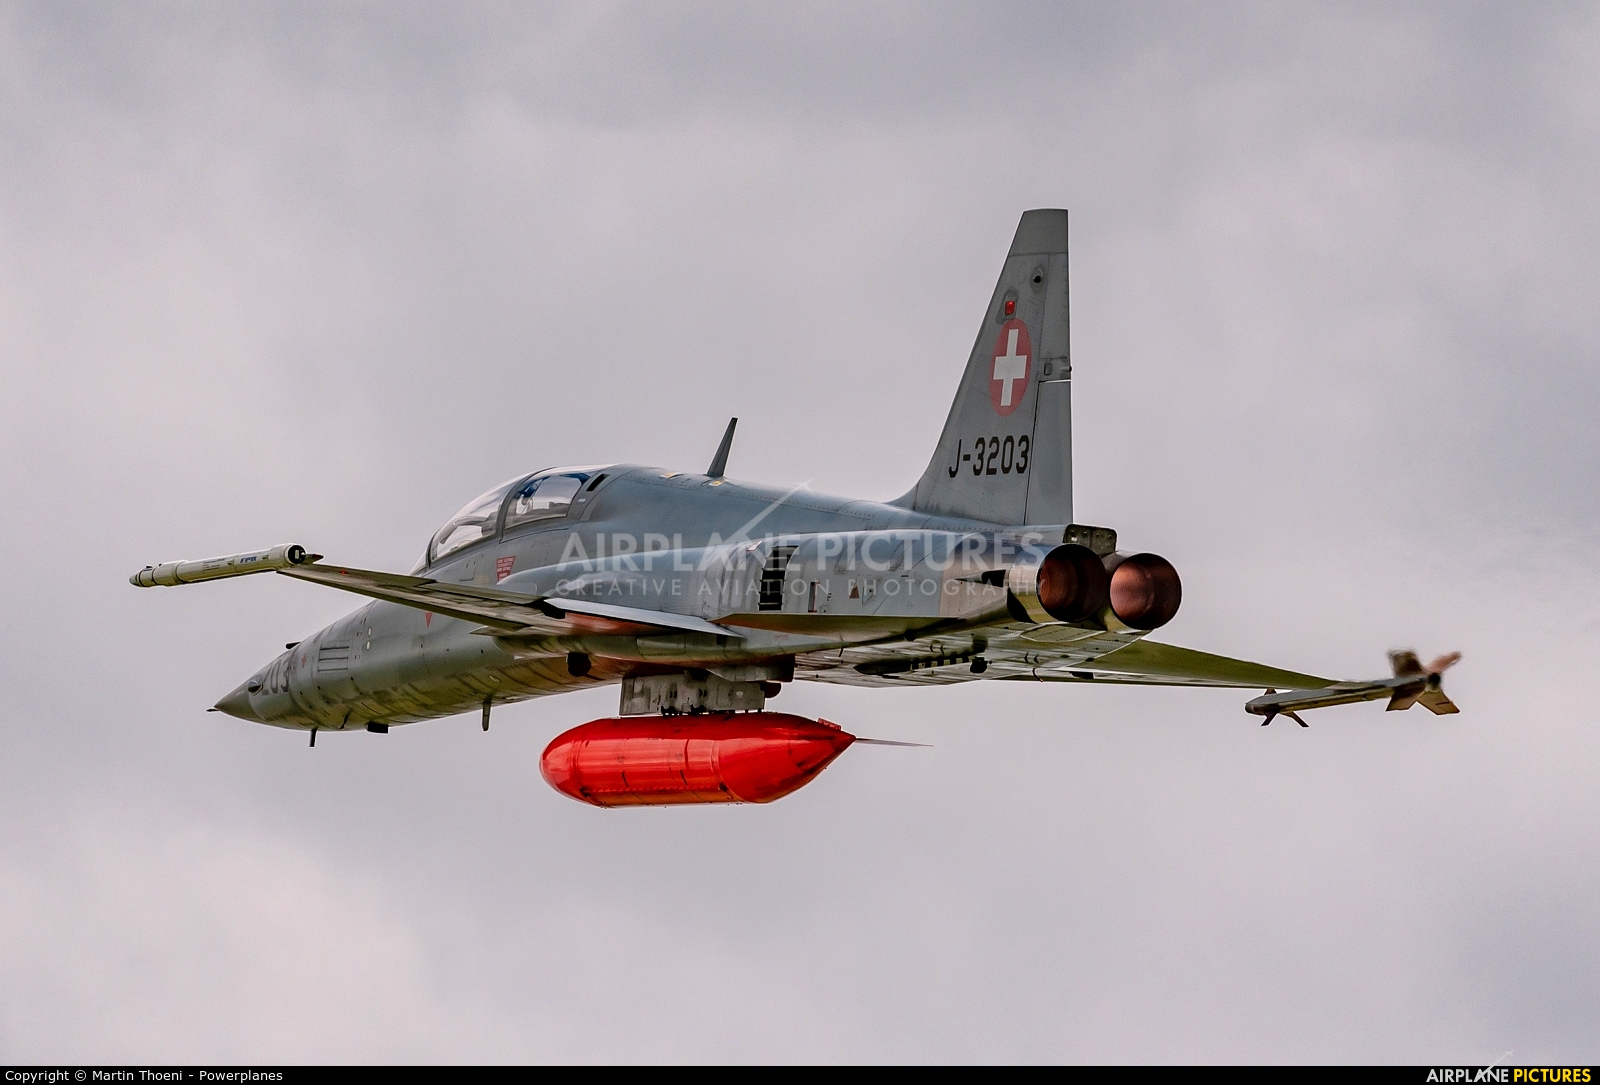 Switzerland - Air Force J-3203 aircraft at Emmen